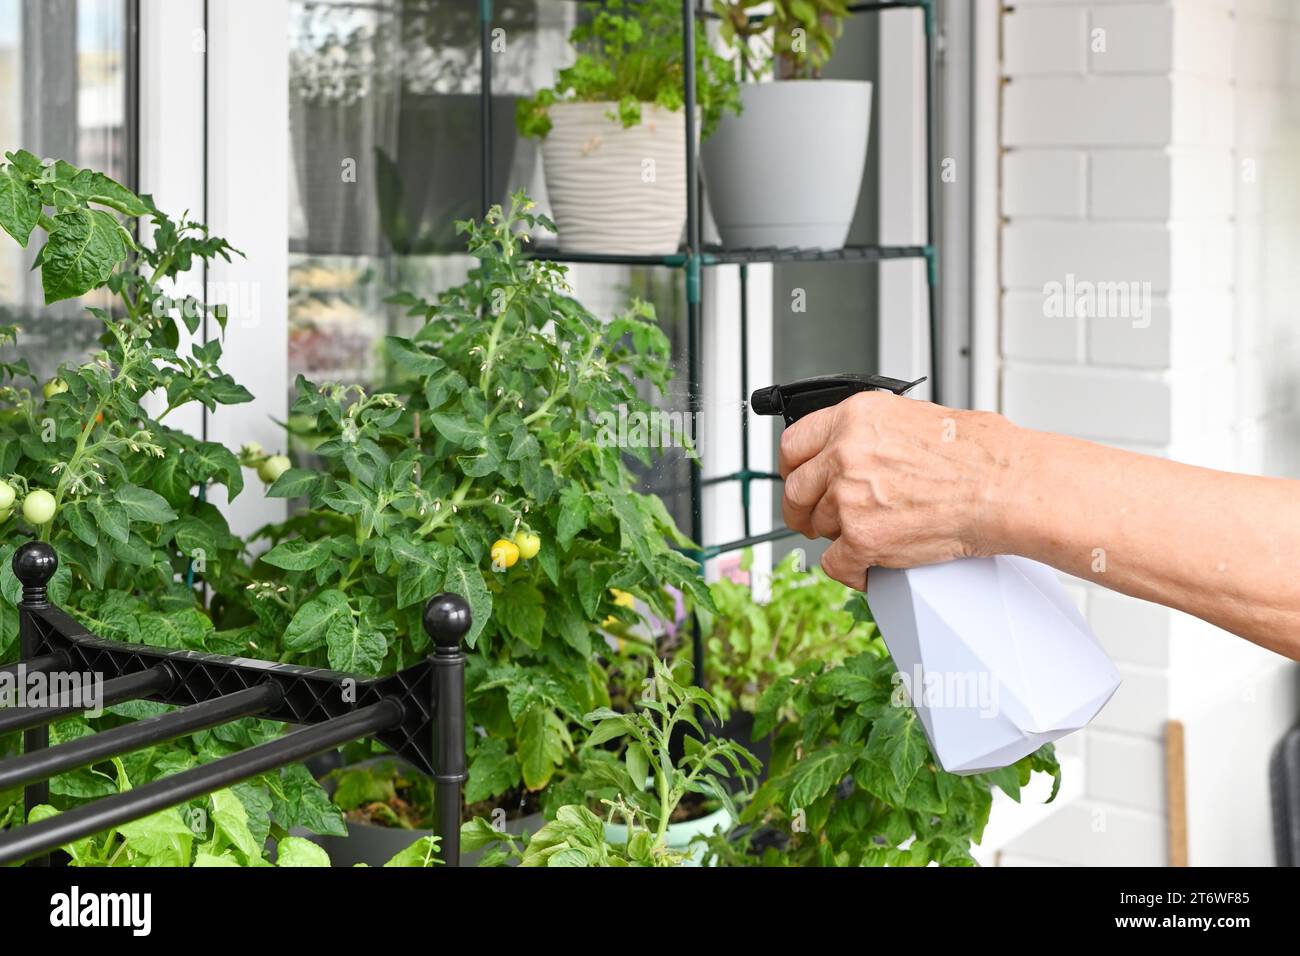 Im Sommer wachsen frische Kräuter zu Hause auf dem Balkon in Blumentöpfen. Nachhaltiger Lebensstil, frisches Bio-Gemüse, das zu Hause angebaut wird Stockfoto